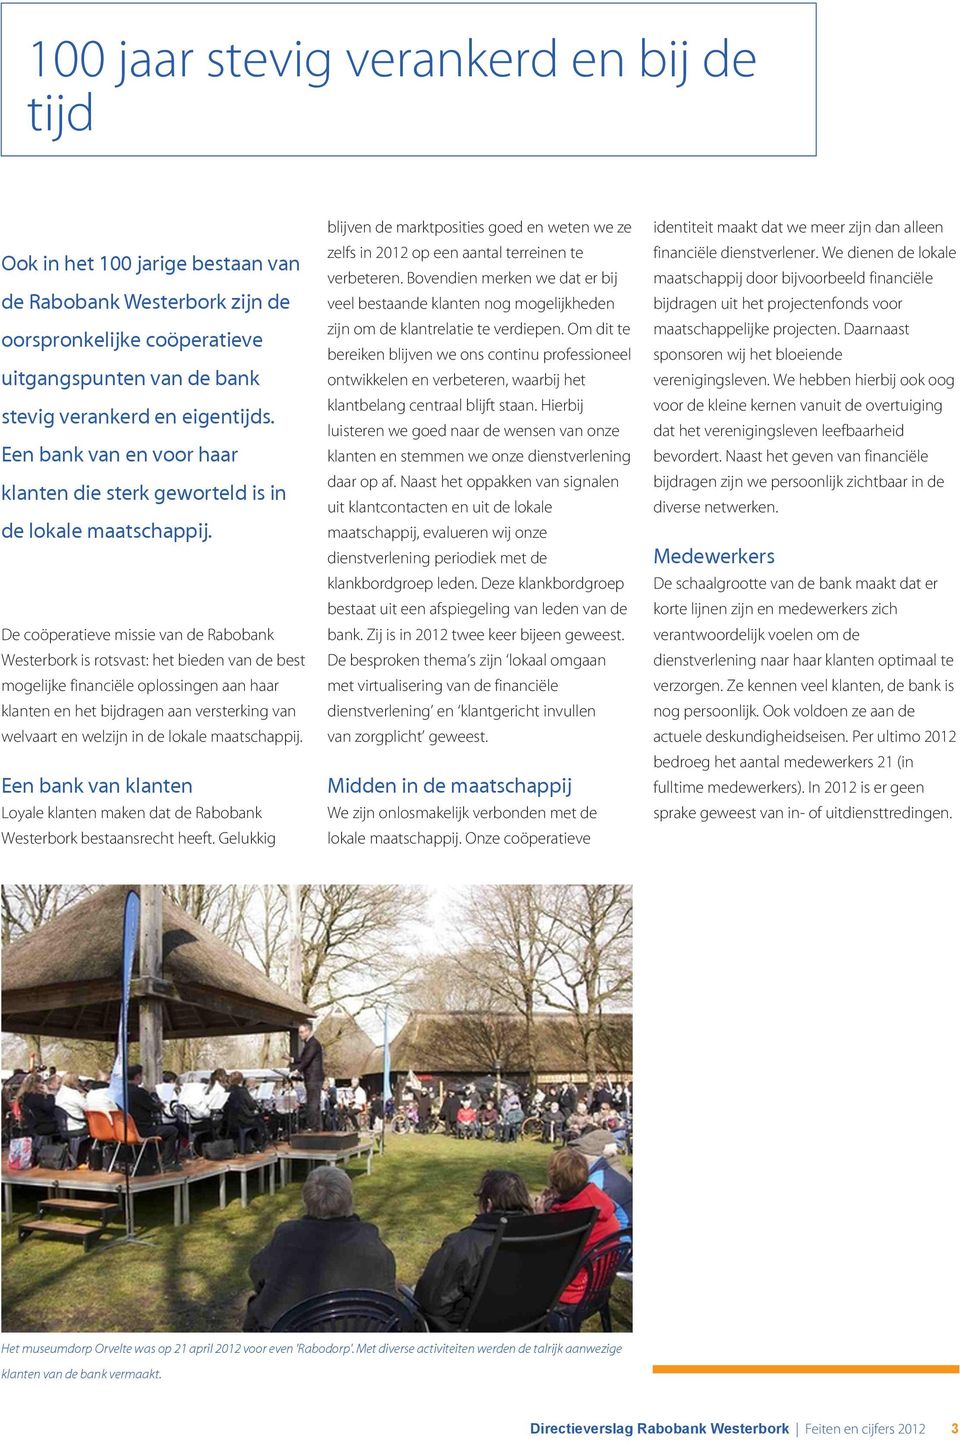 De coöperatieve missie van de Rabobank Westerbork is rotsvast: het bieden van de best mogelijke financiële oplossingen aan haar klanten en het bijdragen aan versterking van welvaart en welzijn in de